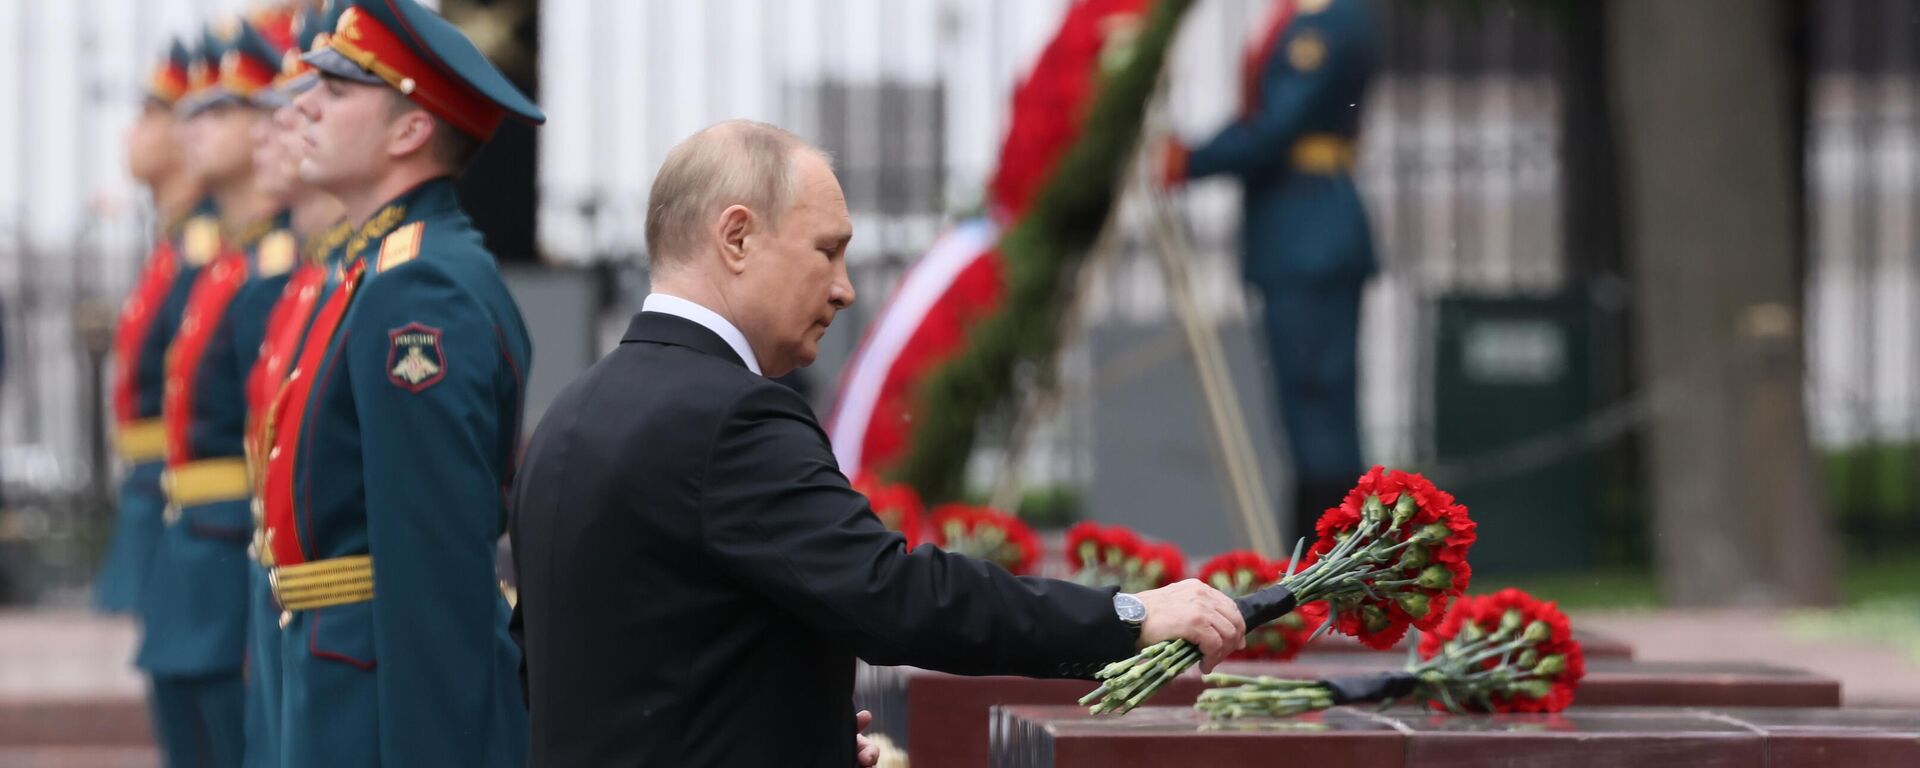 Anma ve Keder Günü vesilesiyle Kremlin Sarayı'nın yanı başındaki Aleksandr Bahçesi'nde tören düzenlendi. Putin, tören başlamadan önce gazileri selamladı. Rus lider daha sonra Meçhul Asker Anıtı'nın 'Ebedi Ateş'ine kırmızı güllerden oluşan çelenk bıraktı. - Sputnik Türkiye, 1920, 22.06.2022